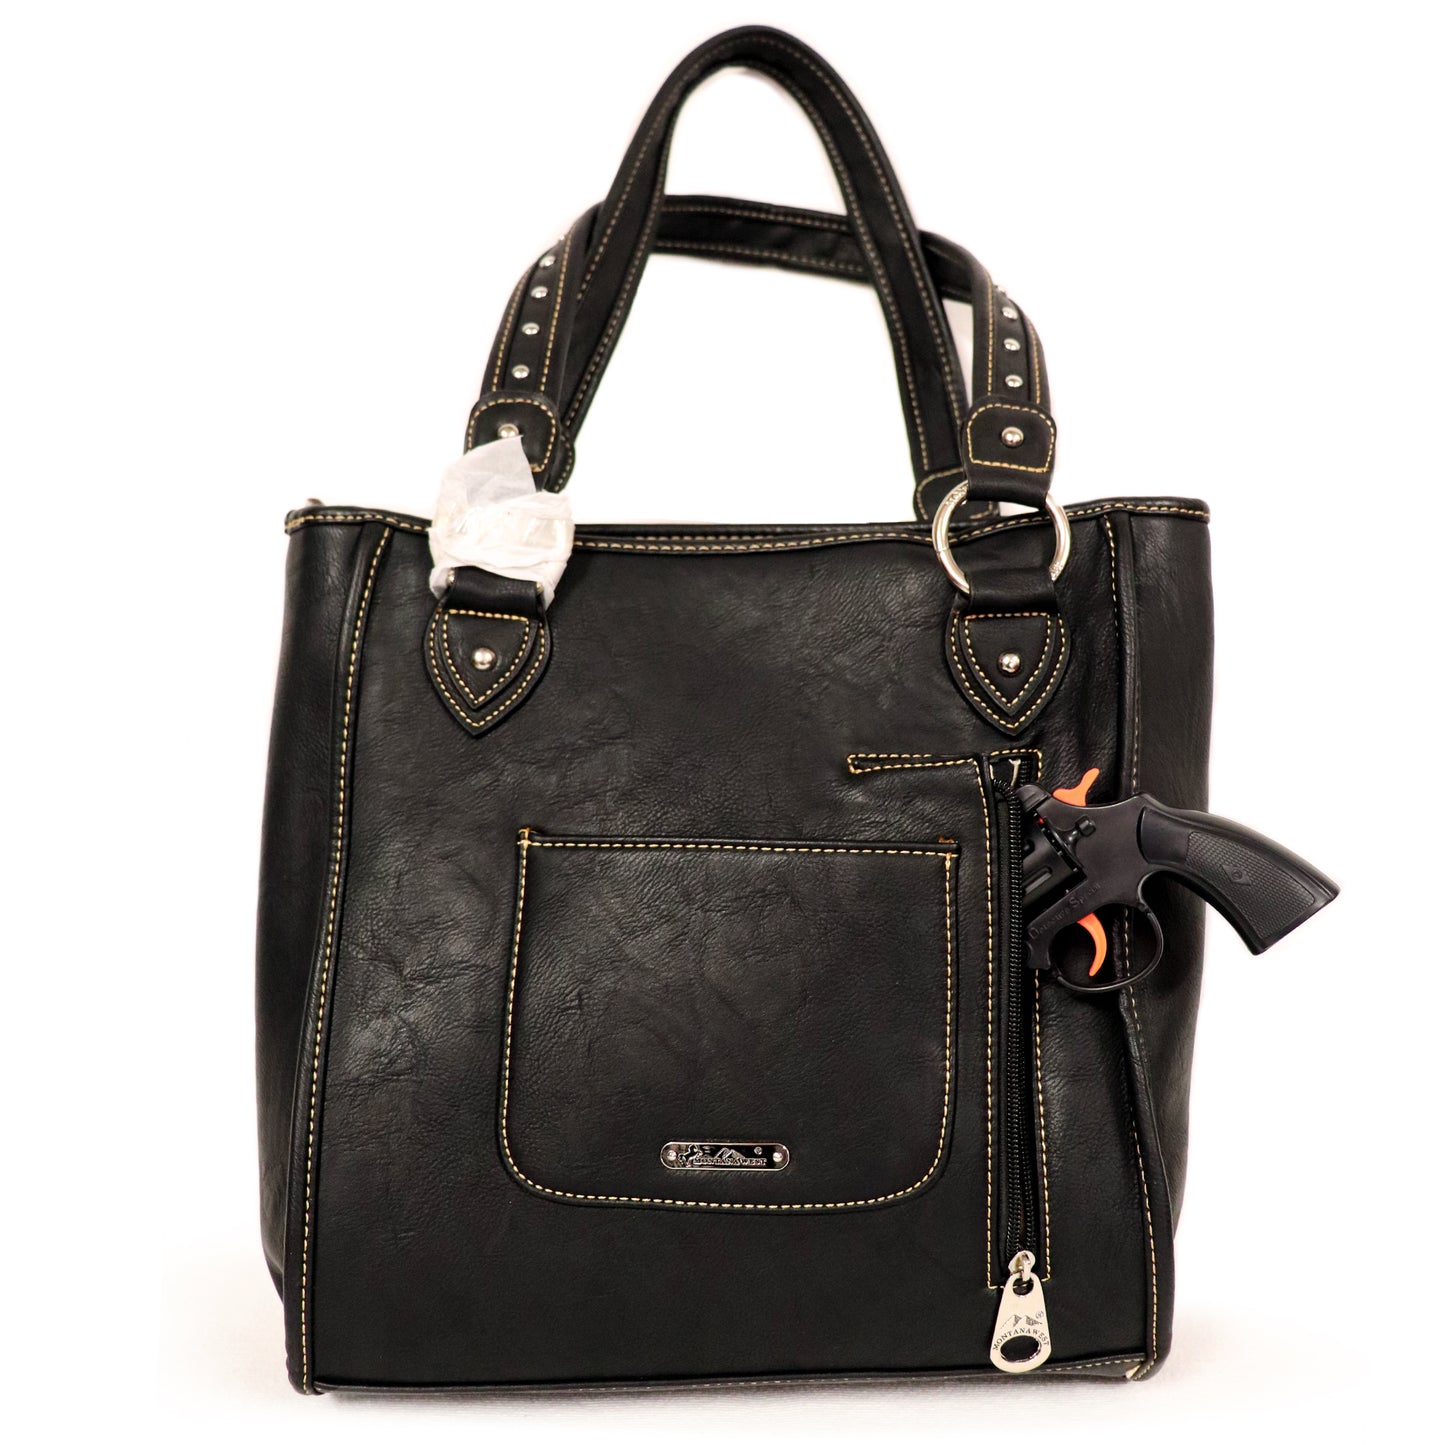 Leather Belt Bag - Lime Green - Sugar Skull Roses - Handbag -  BAG35-EBL14-LIME-DL